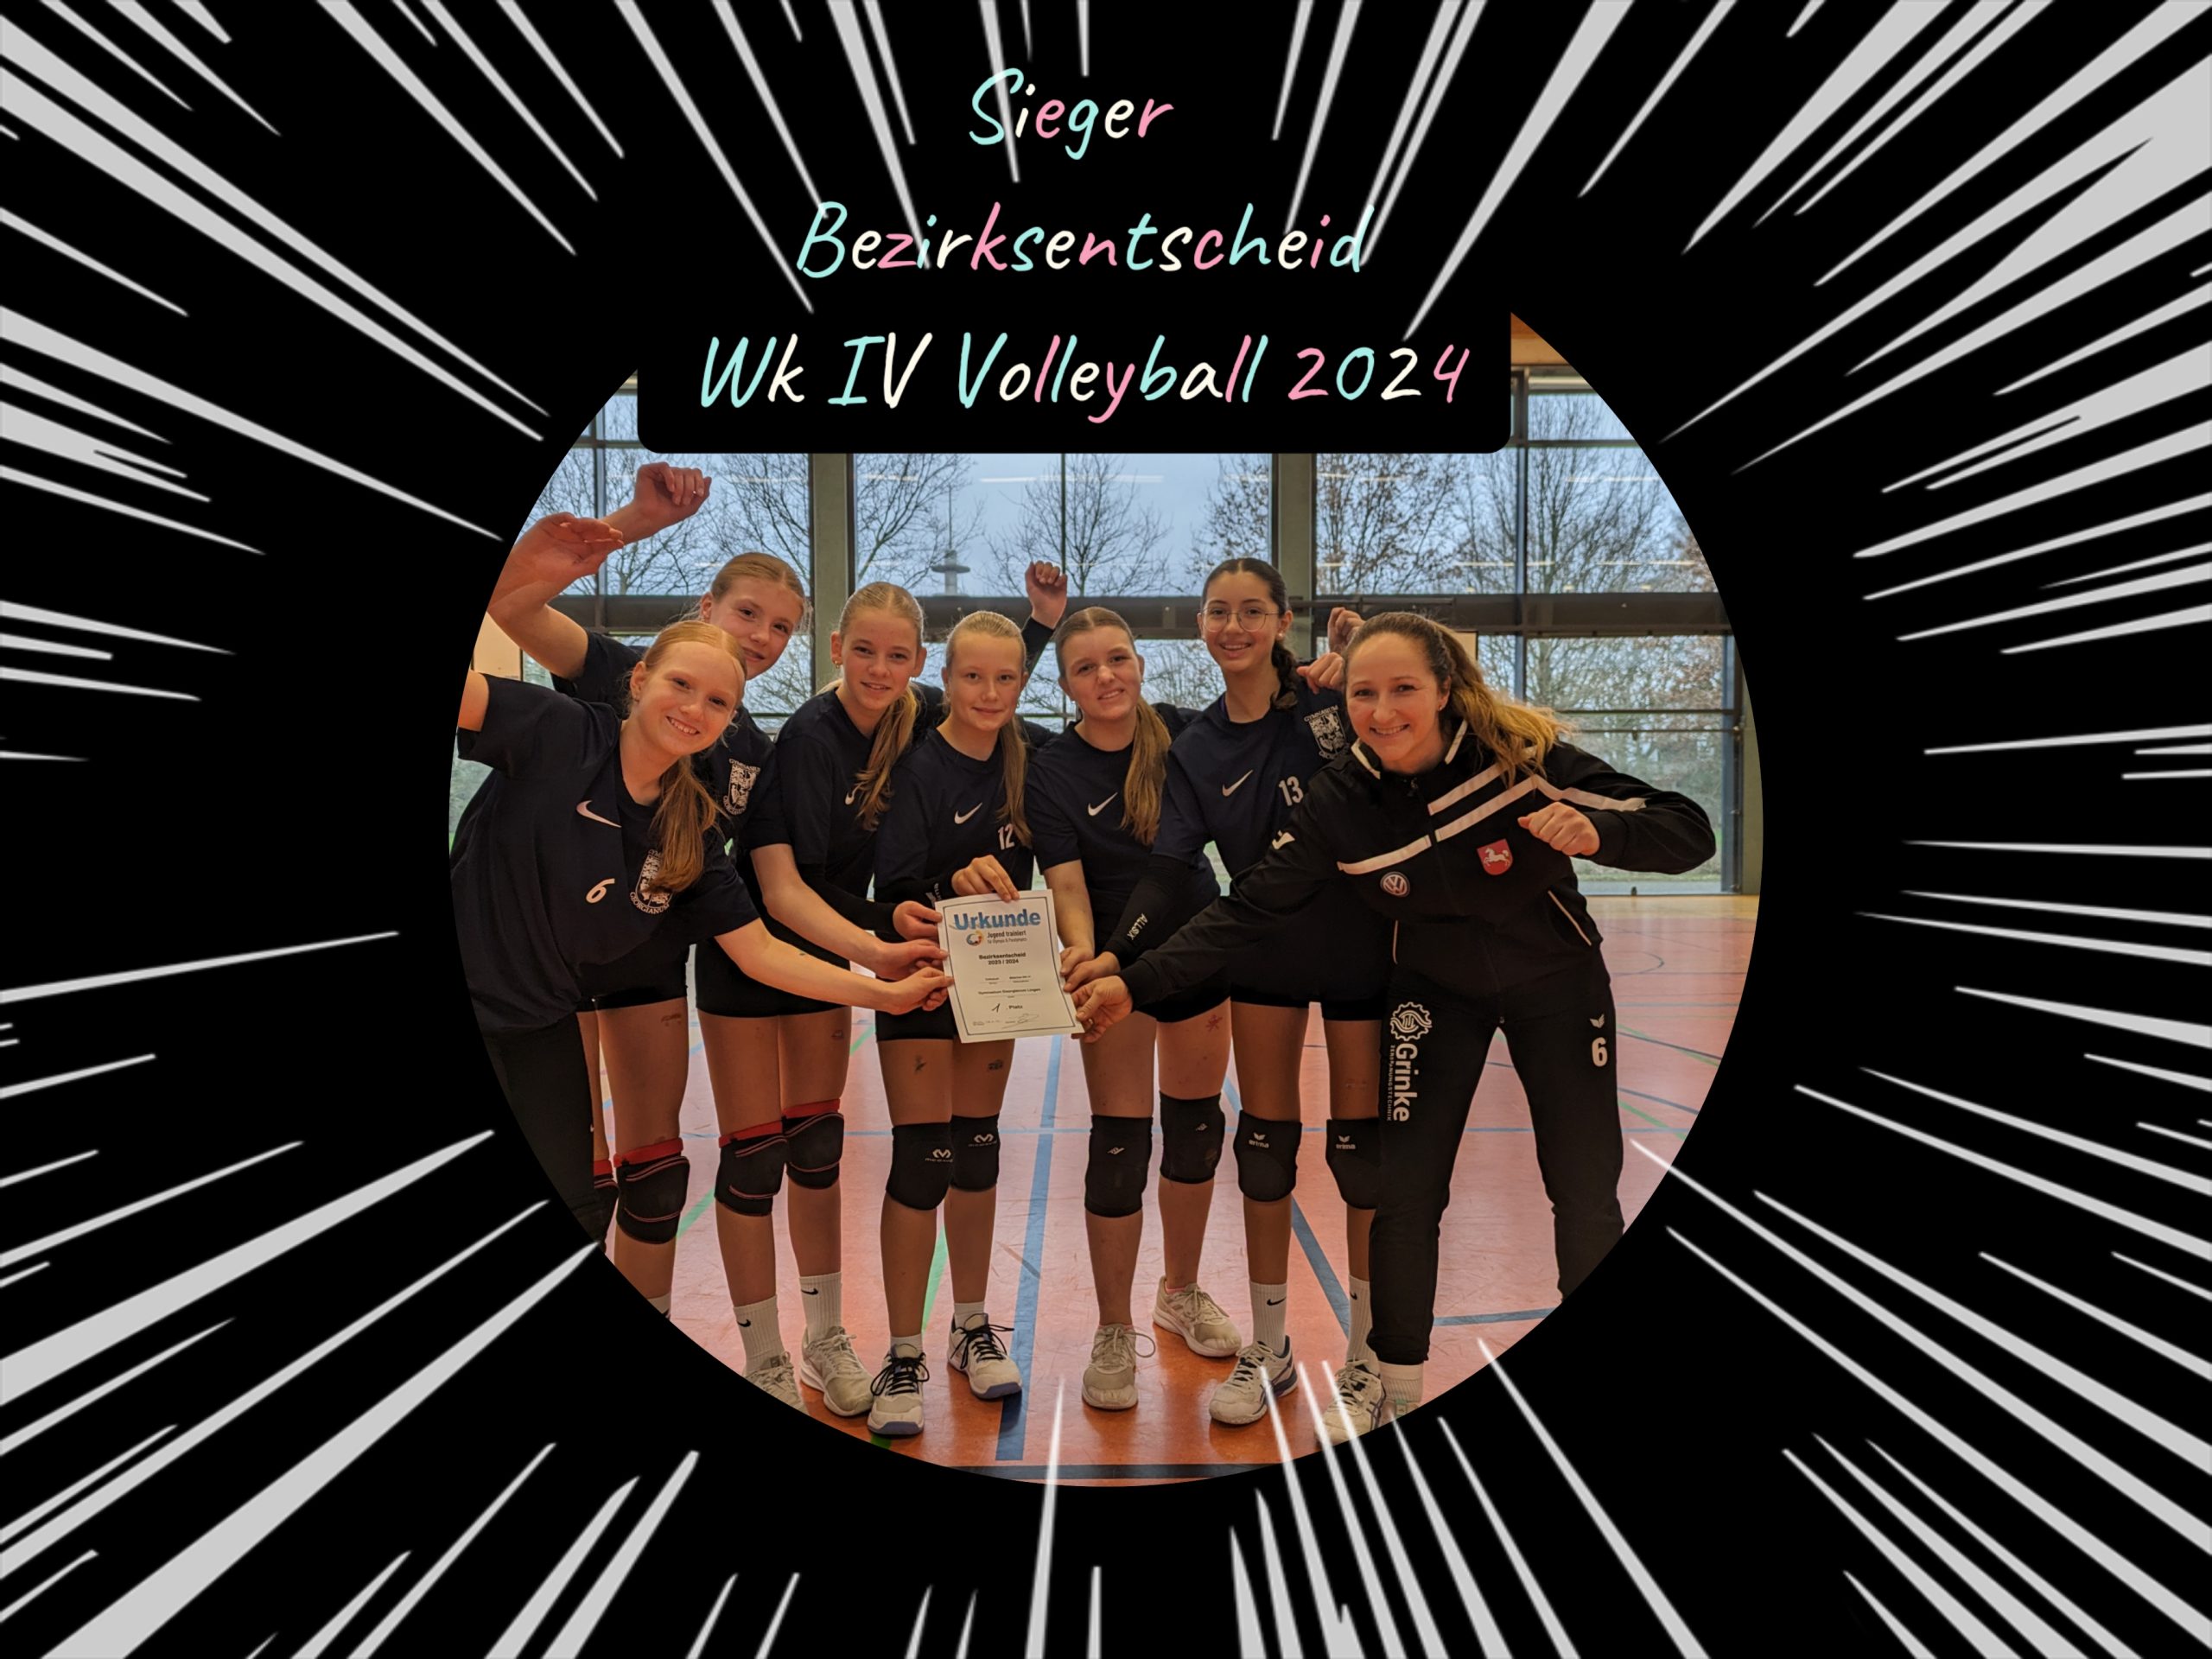 Perfekter Tag für unsere Volleyballerinnen der Wk IV